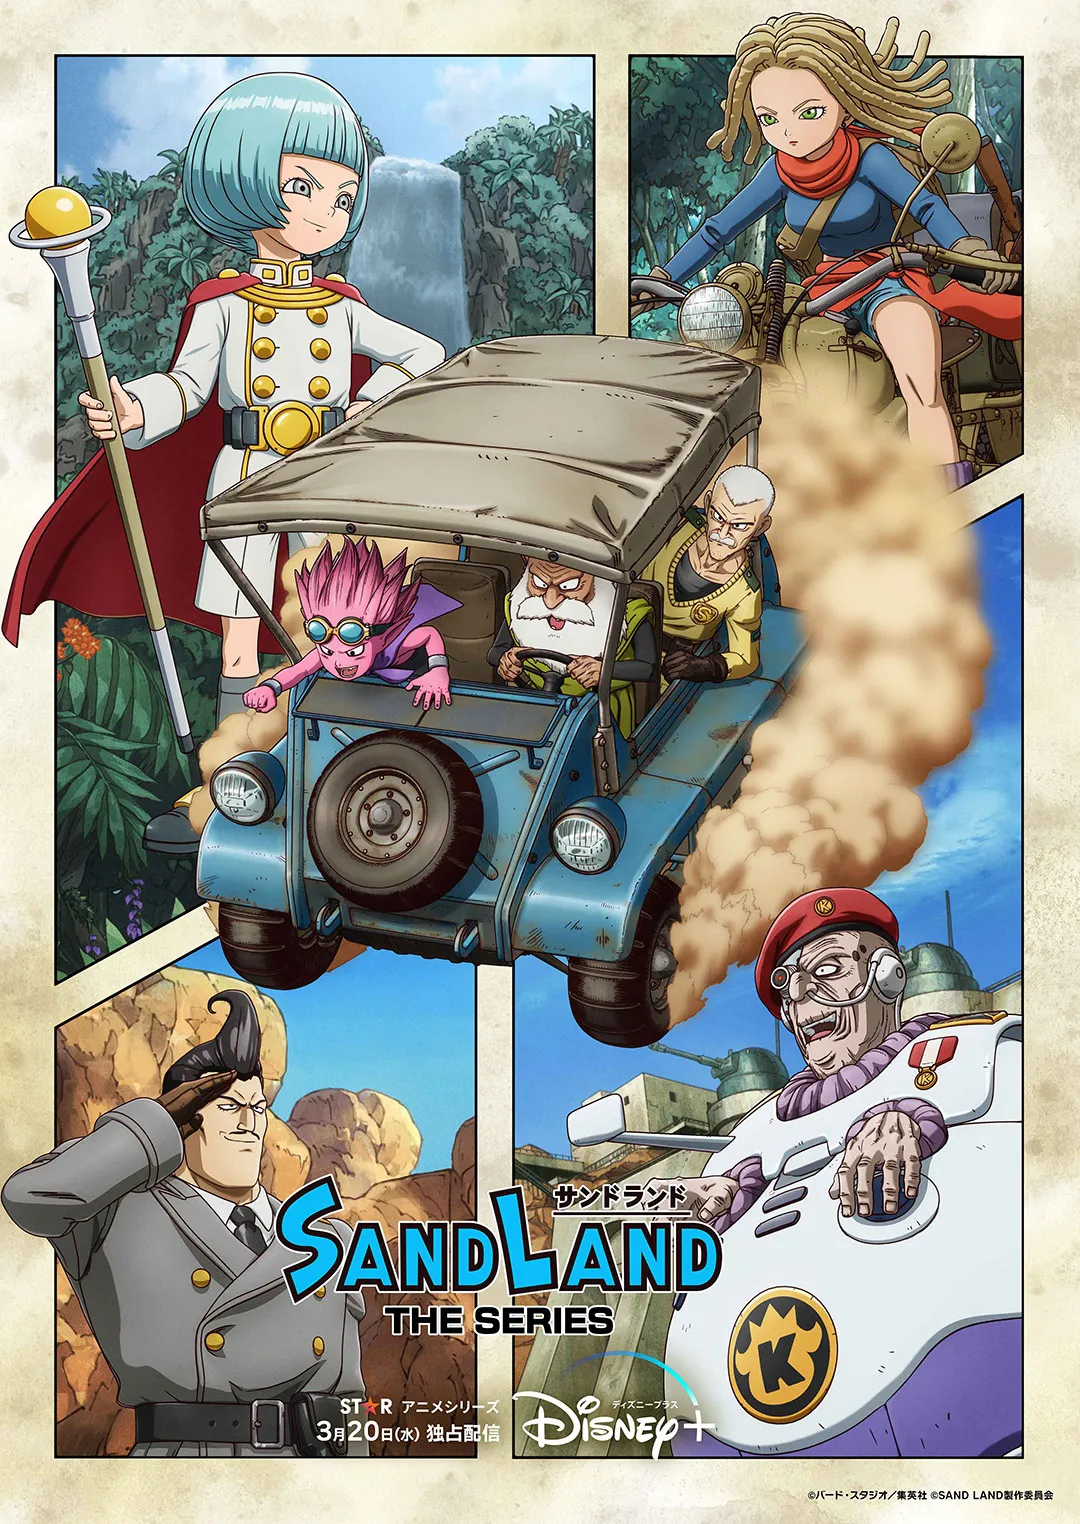 スターオリジナルシリーズ「SAND LAND: THE SERIES」ディズニープラスの「スター」で世界独占配信中